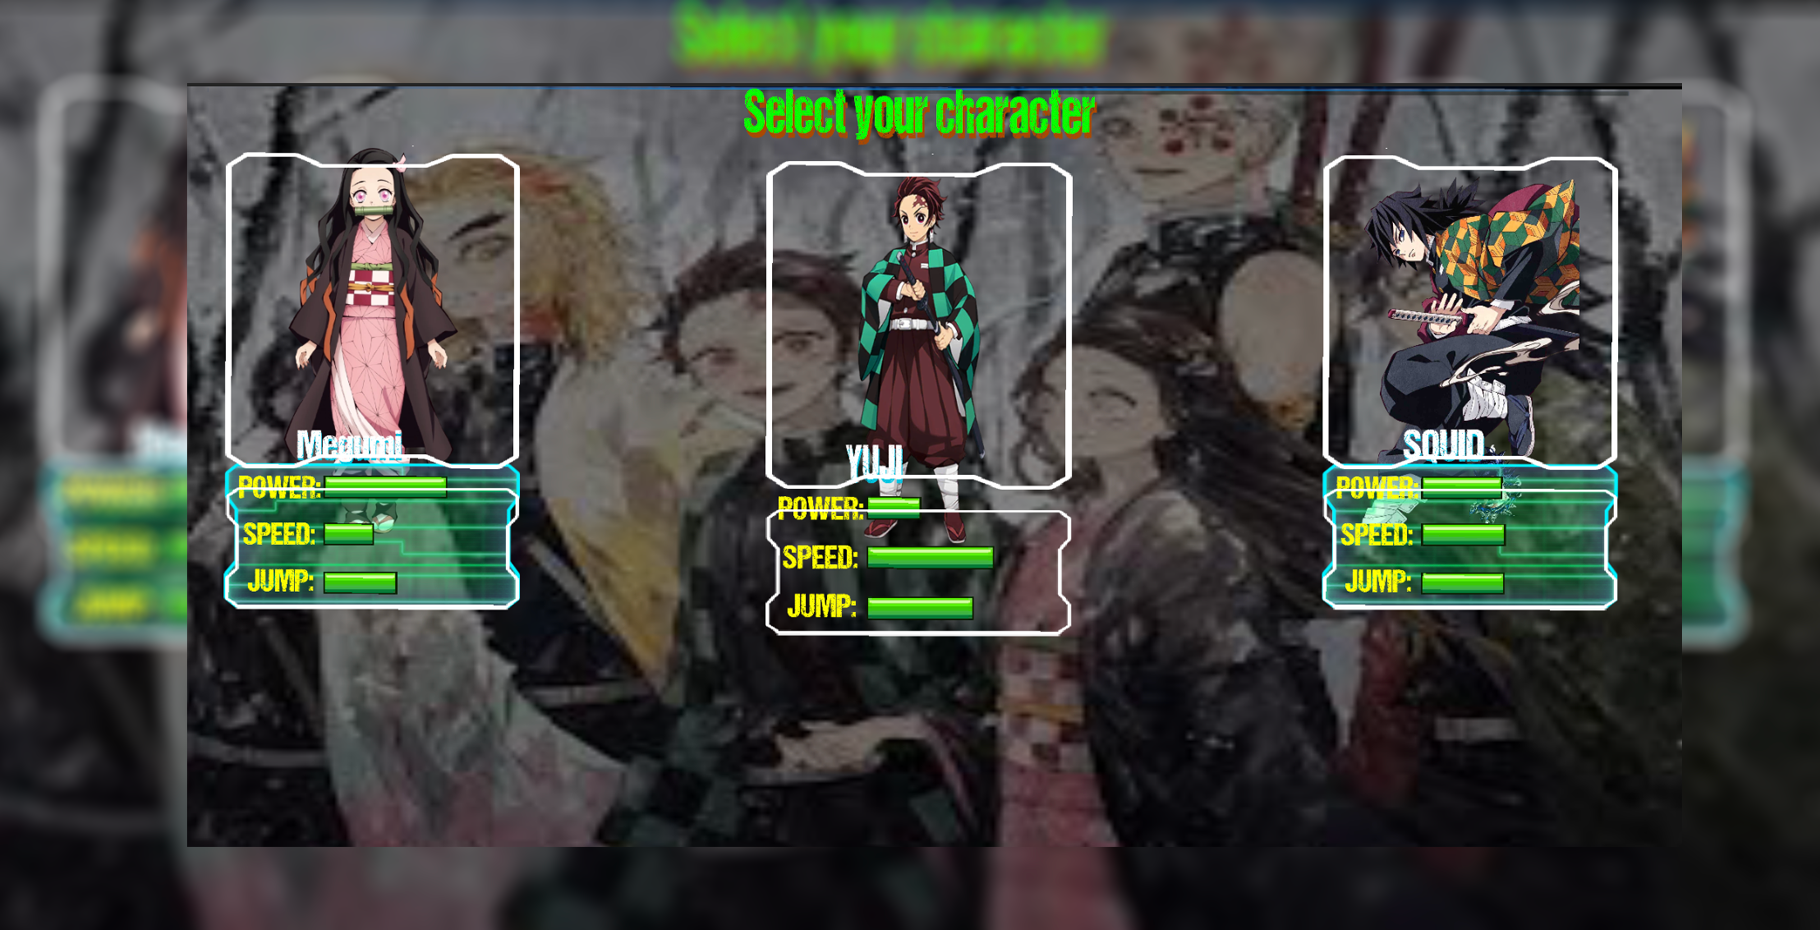 kimetsu no adventure : tanjiro fight - Latest version for Android